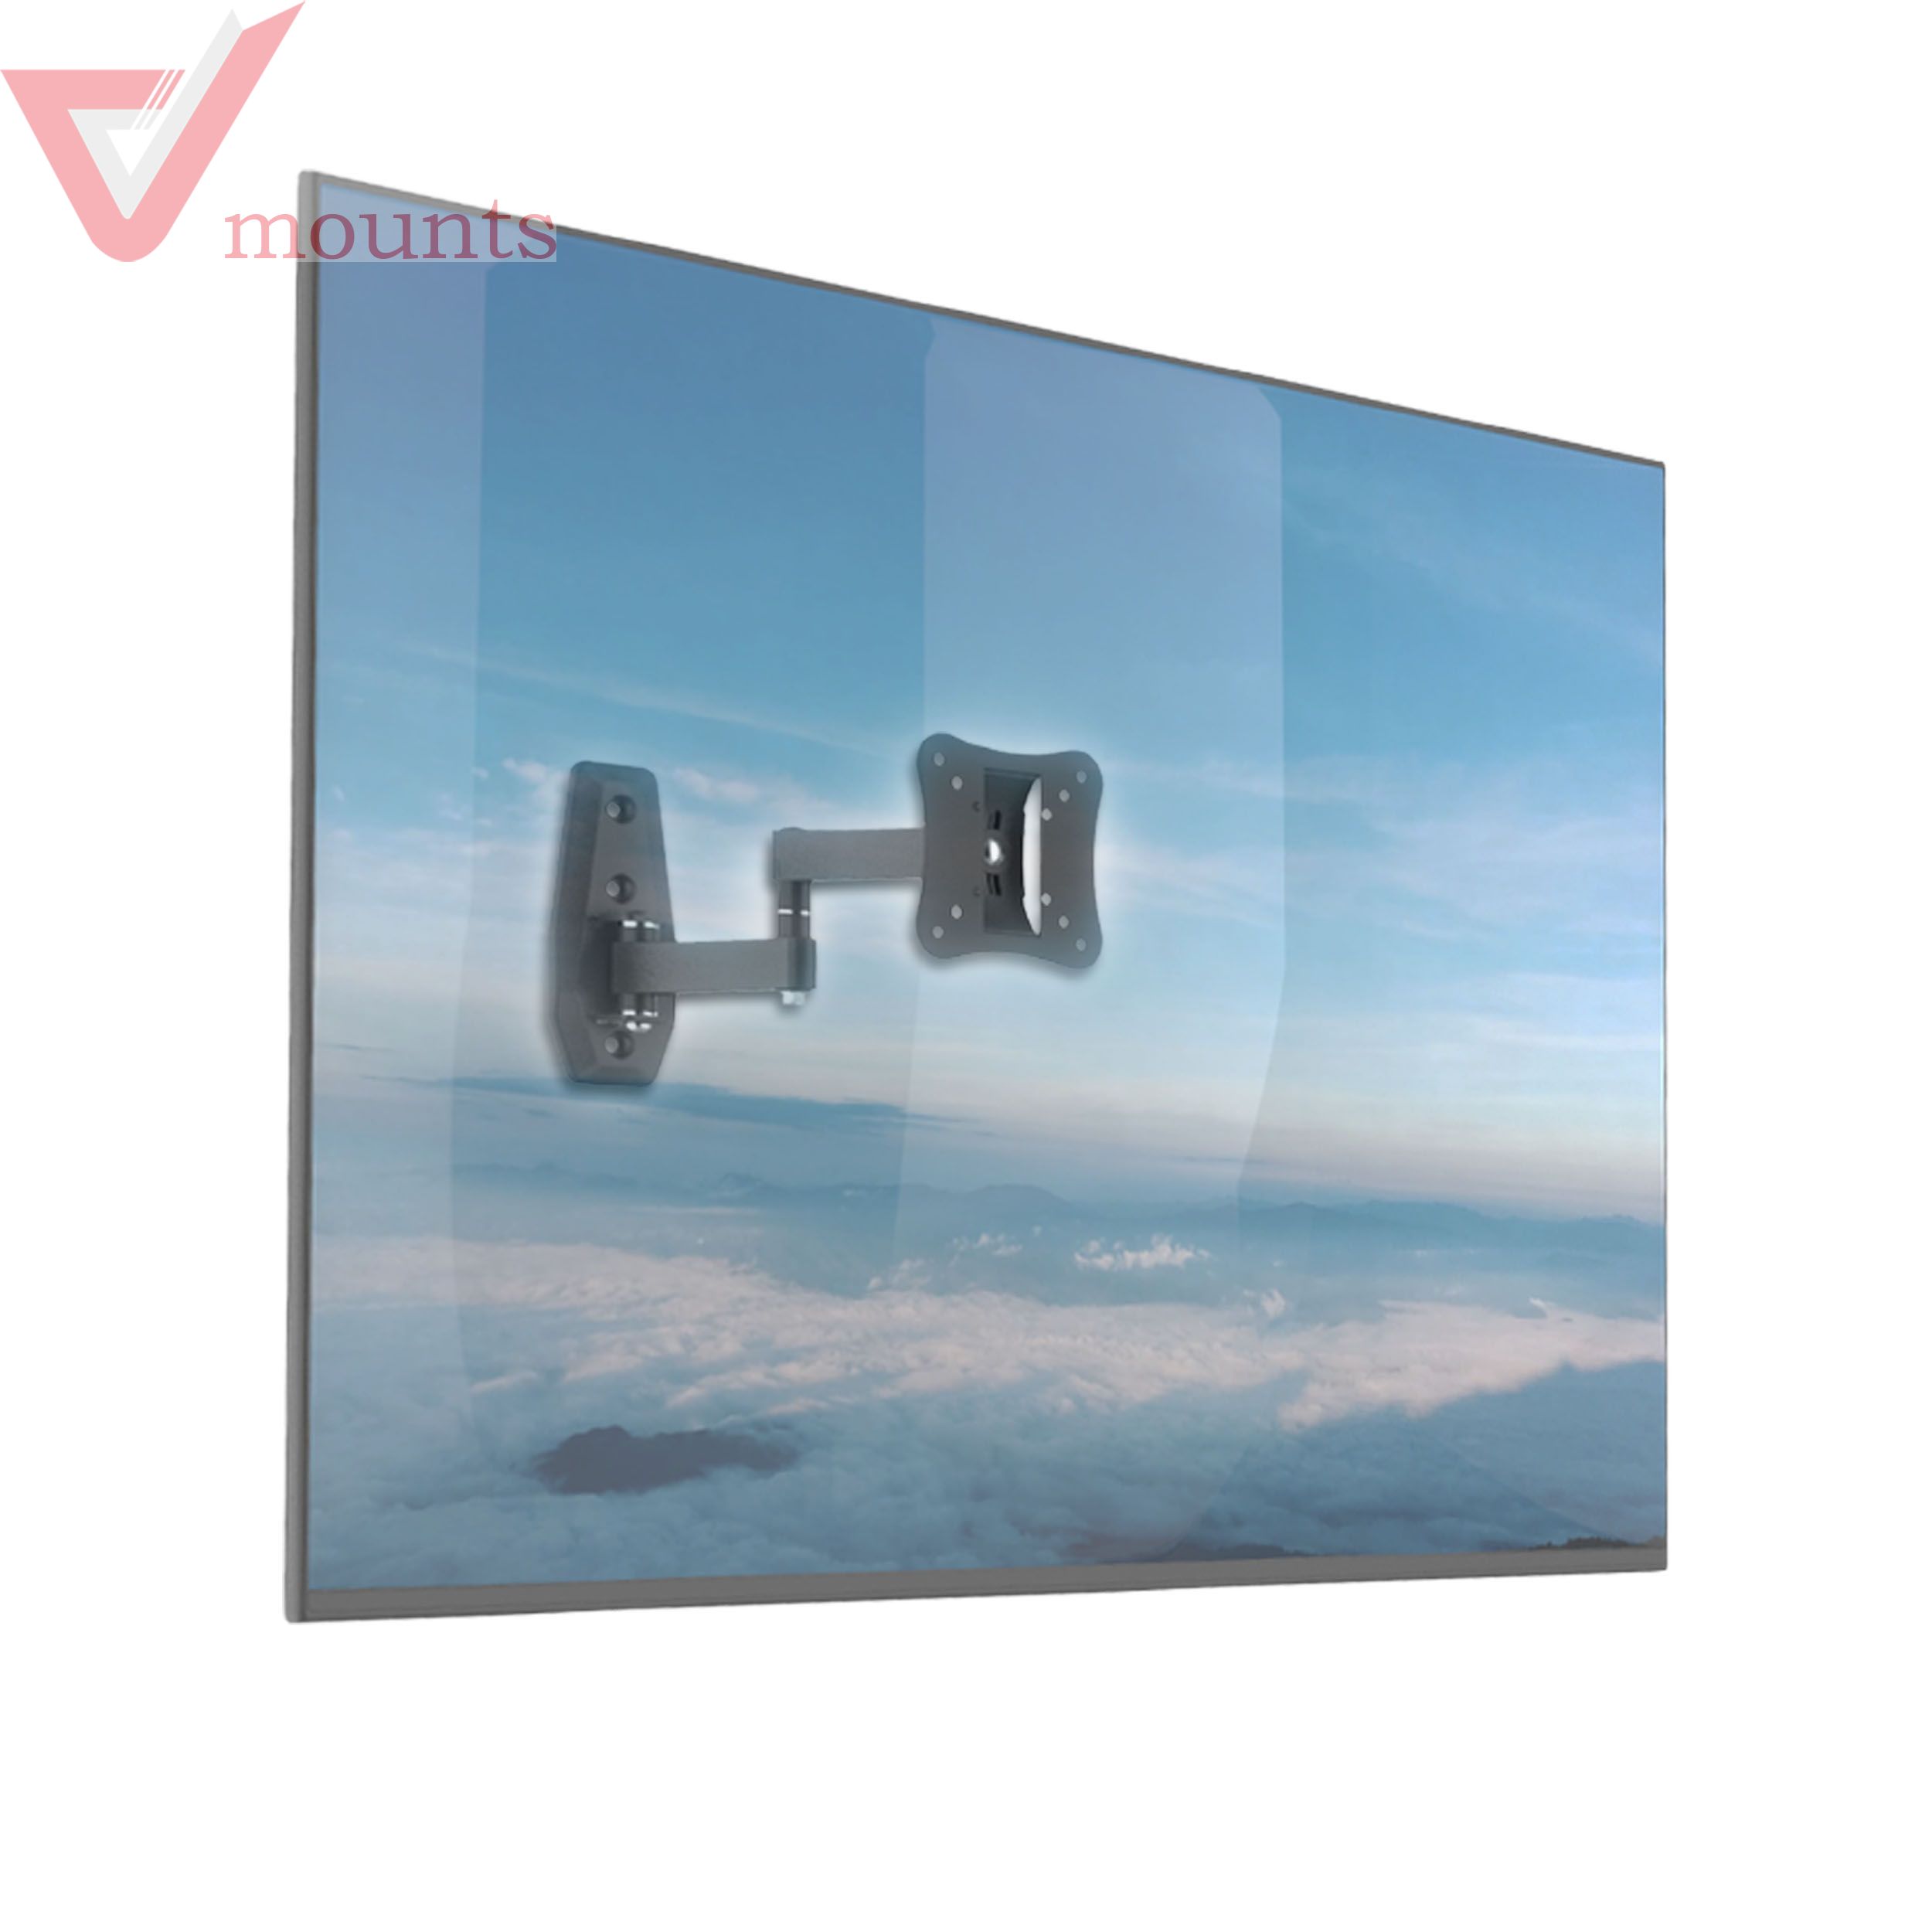 V-mounts Full Monition TV Wall Mount VM-SL09M